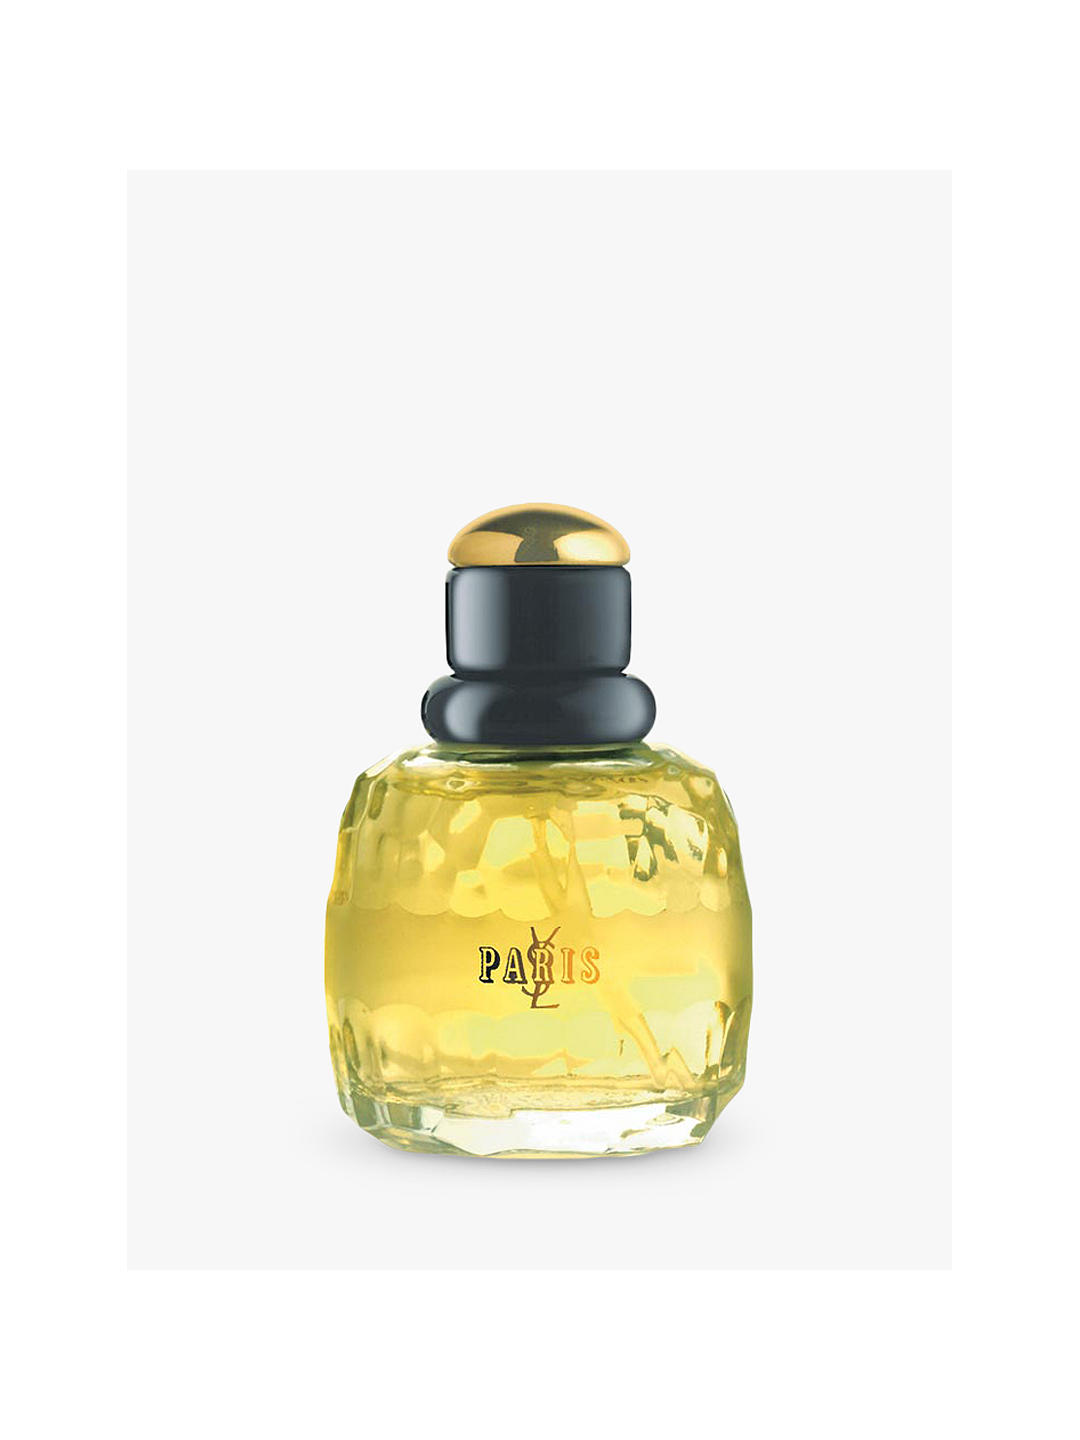 Yves Saint Laurent Paris Eau de Parfum Natural Spray, 50ml 1